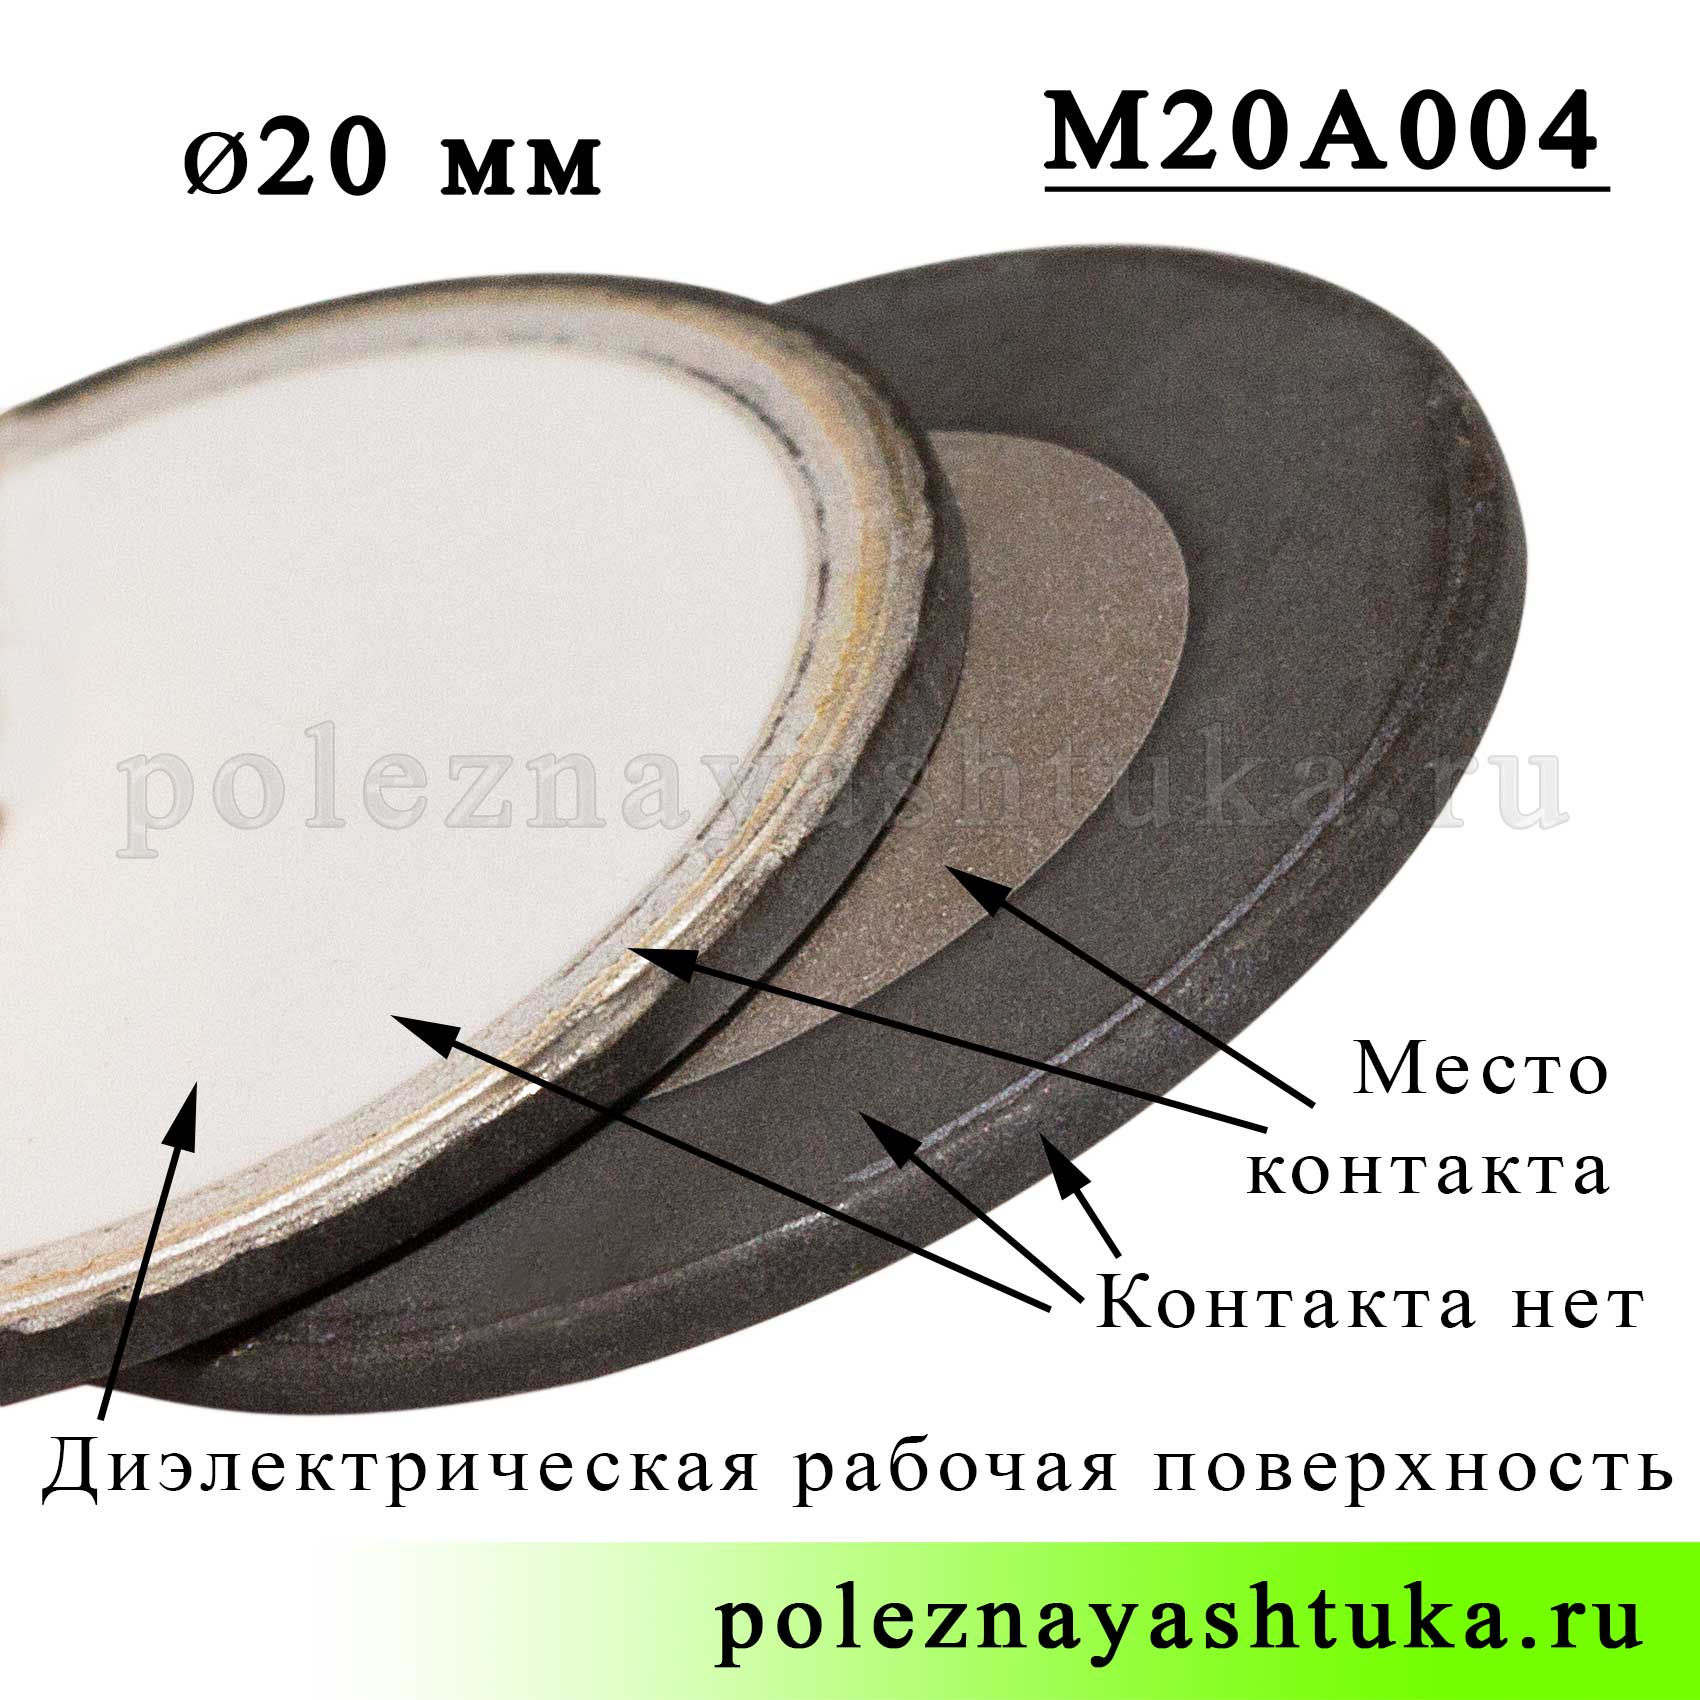 Ультразвуковая мембрана для увлажнителя, 20 мм, беспроводная, размеры пьезоизлучателя